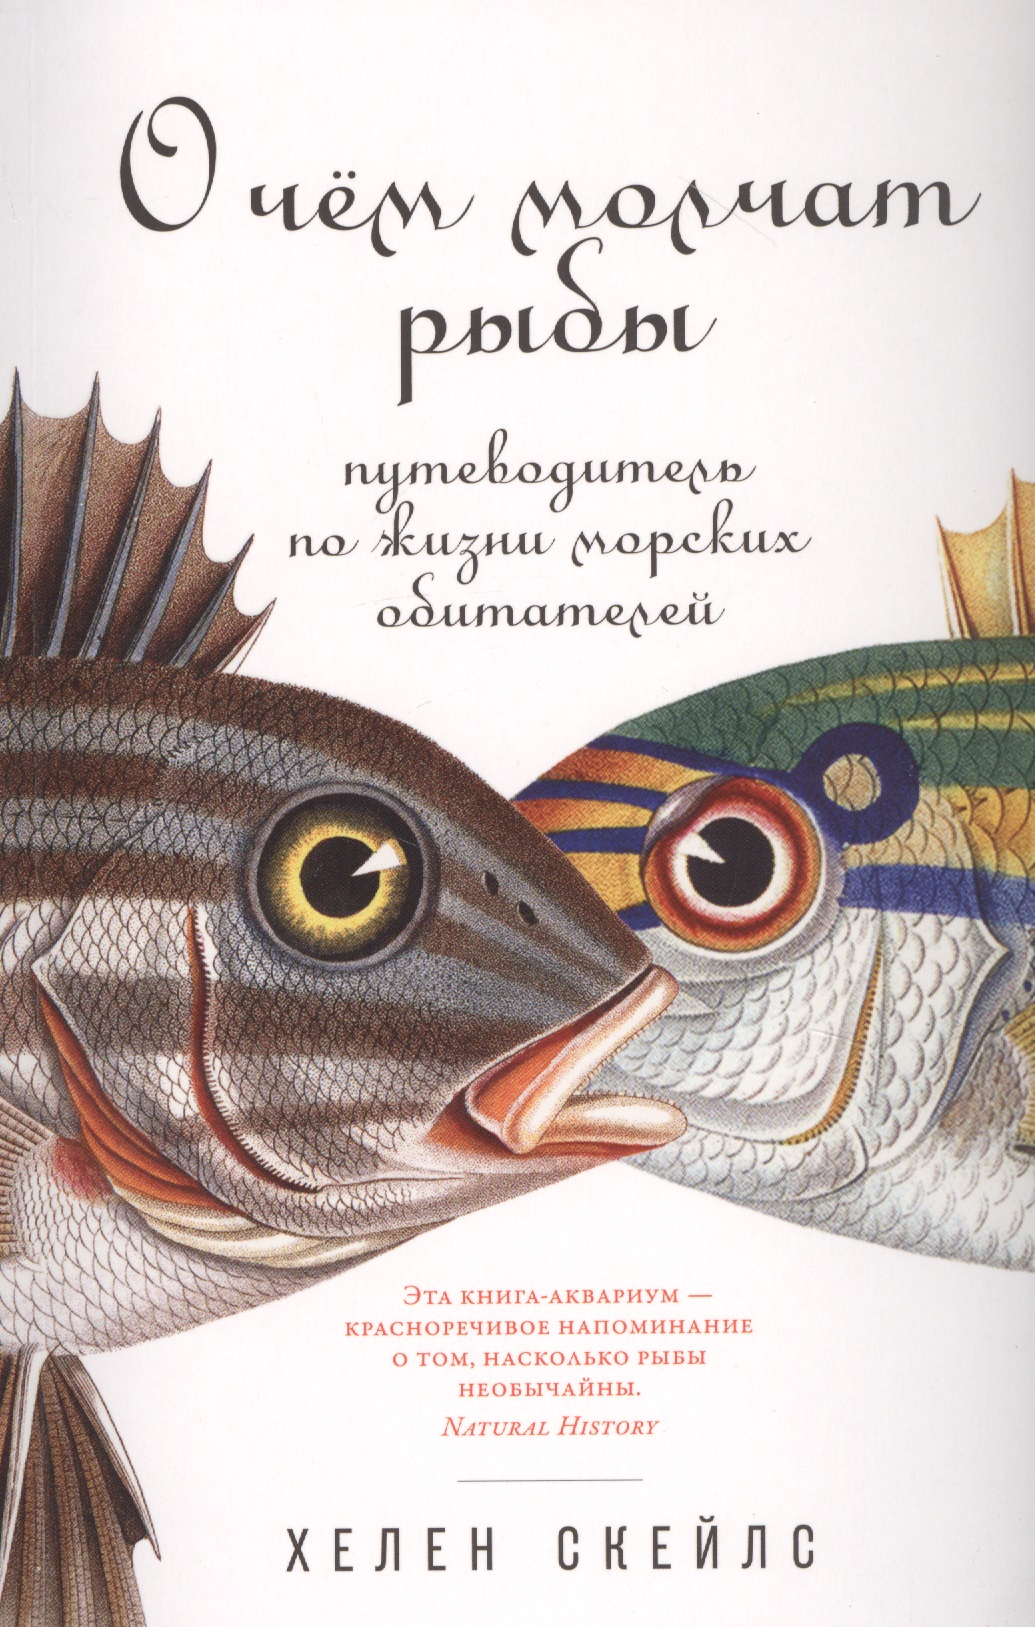 Скейлз Хелен - О чем молчат рыбы: Путеводитель по жизни морских обитателей